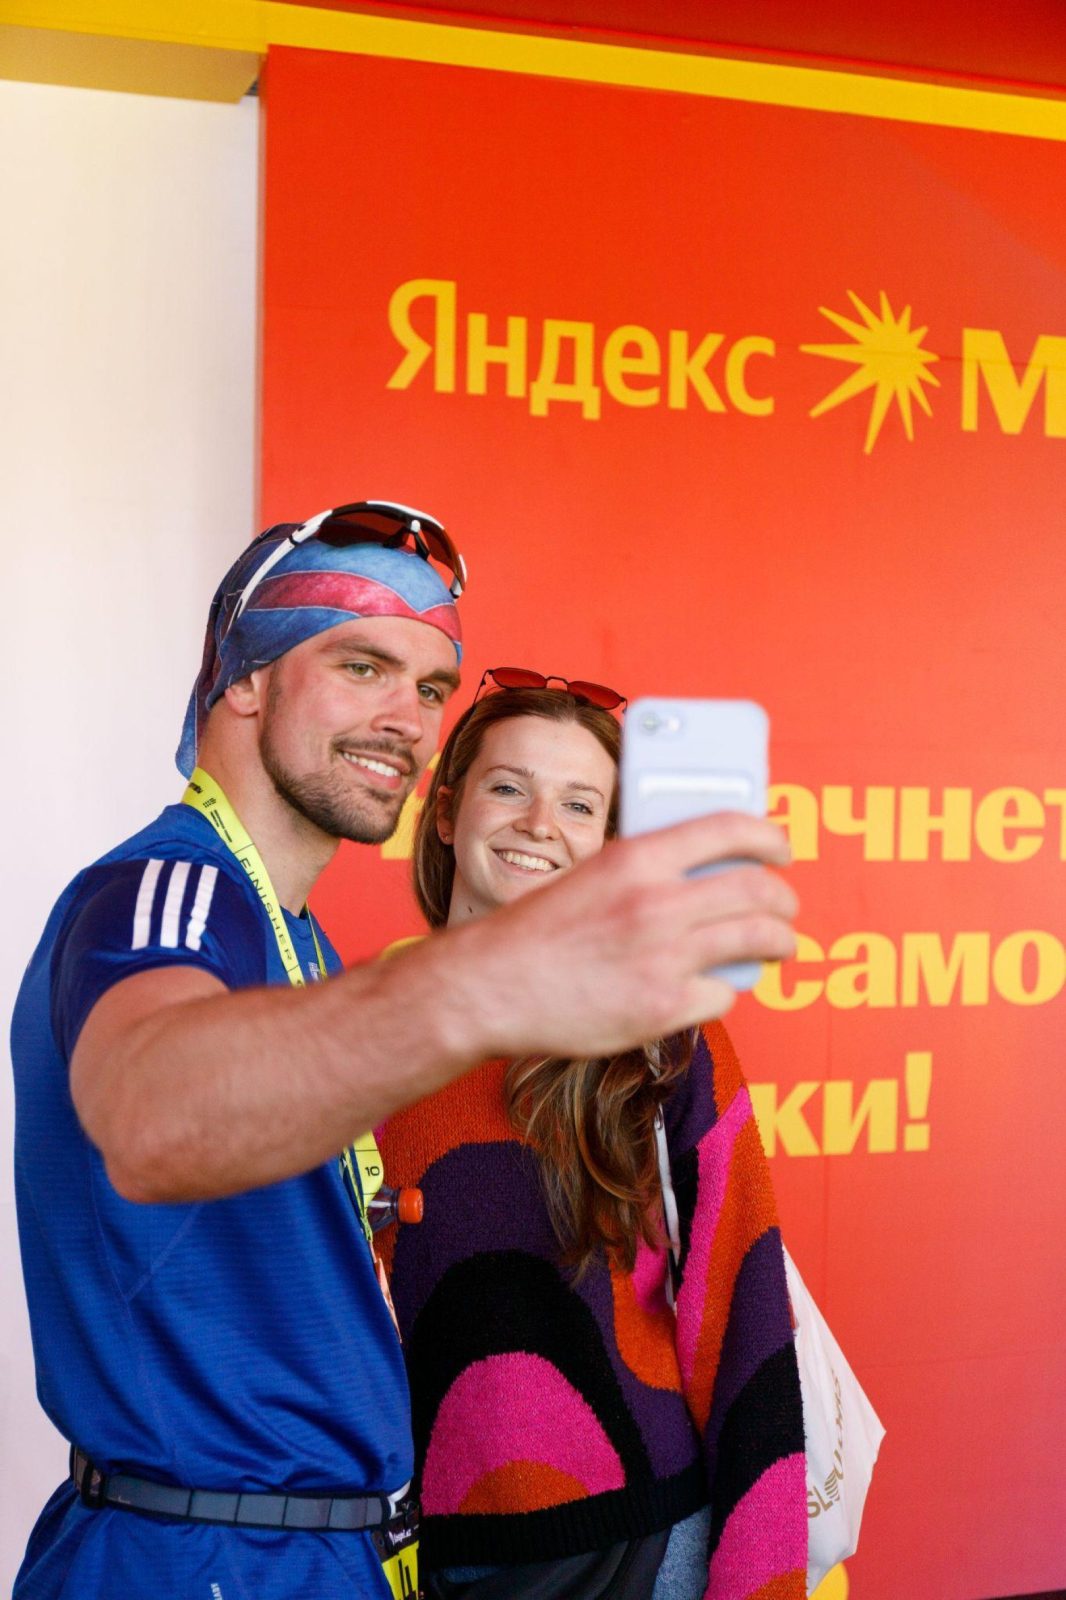 Среди участников Almaty Half Marathon был замечен известный казахстанский певец MAKVIN